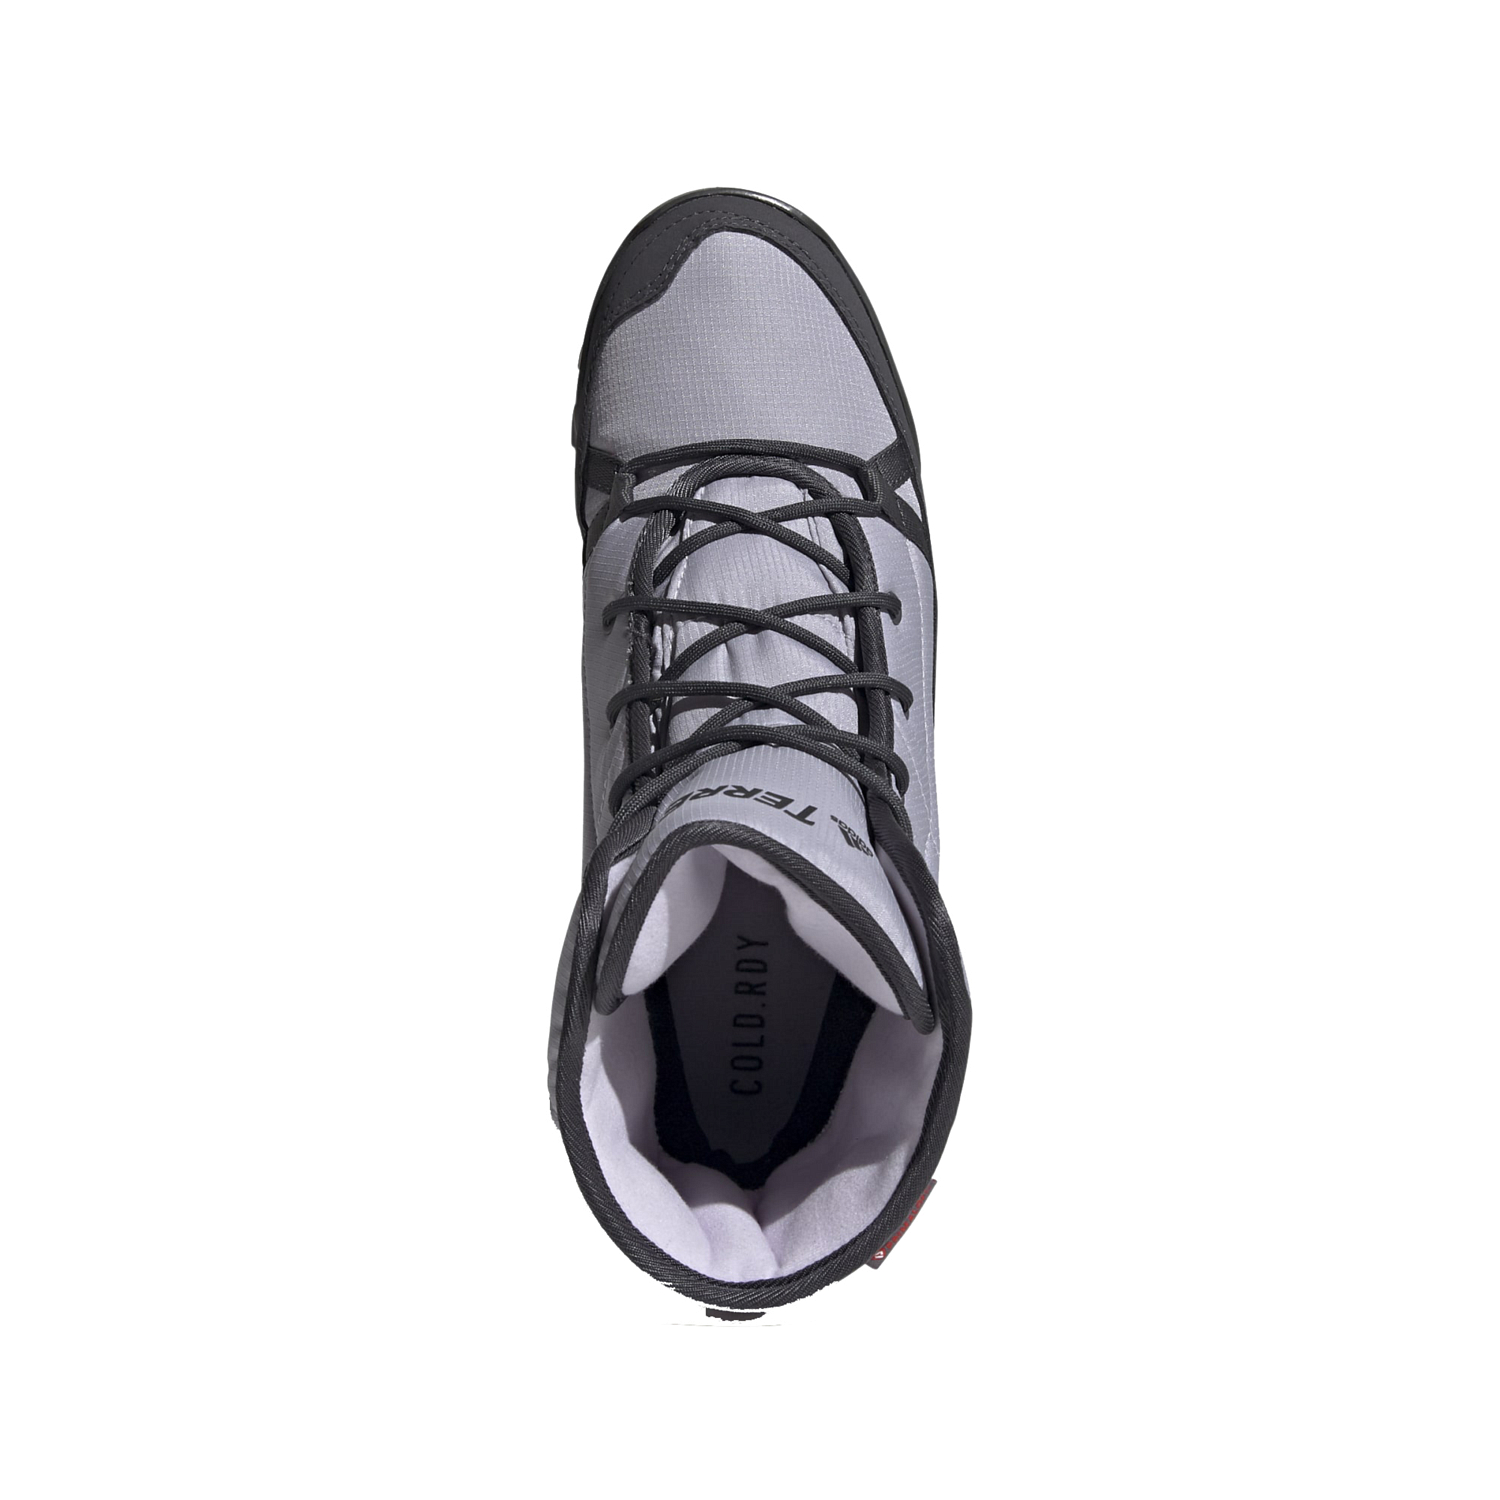 Ботинки Adidas 2020-21 TERREX CHOLEAH PADDED CLIMAPROOF Glory Grey/Dgh Solid Grey/Purple Tint